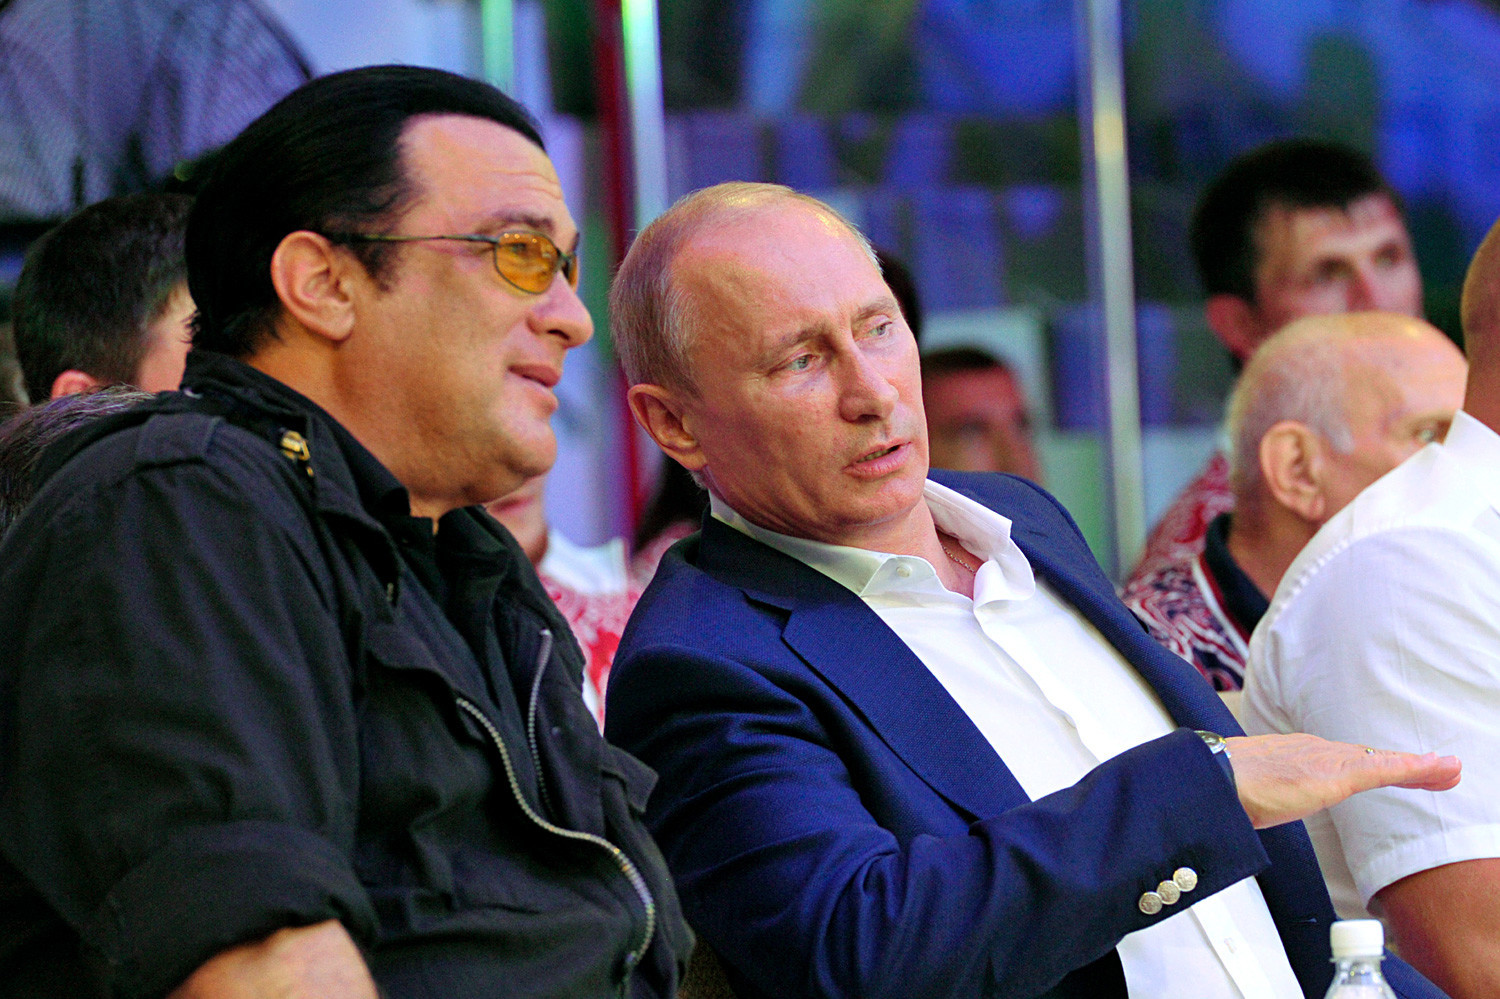 “Lo considero mi amigo y me gustaría que fuera mi hermano”, dijo Seagal sobre Putin.